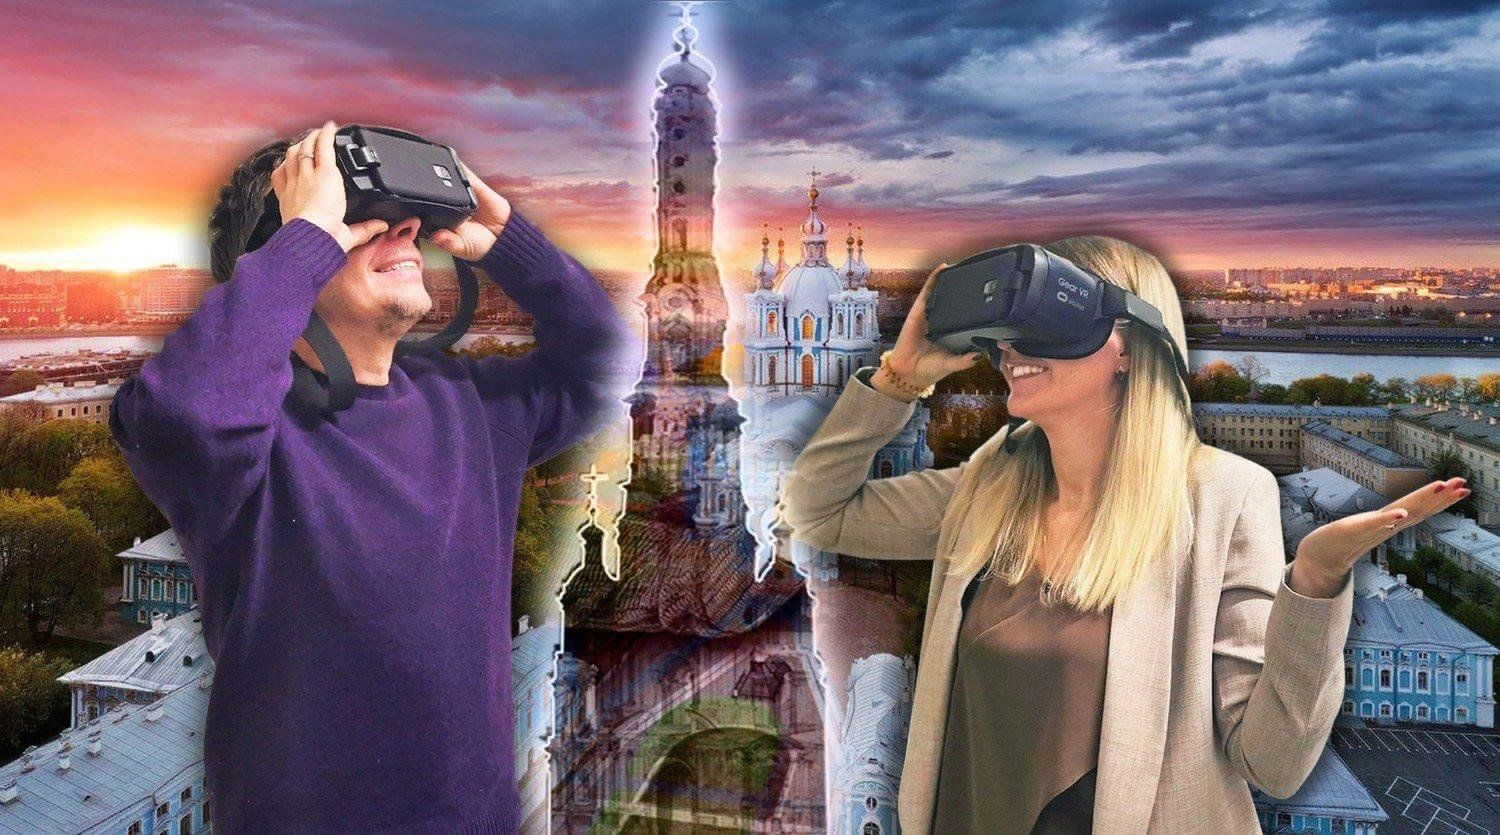 Vr город. Экскурсия в виртуальной реальности. VR реальность на экскурсии. Обзорная экскурсия по виртуальной реальности. Экскурсия в VR очках.